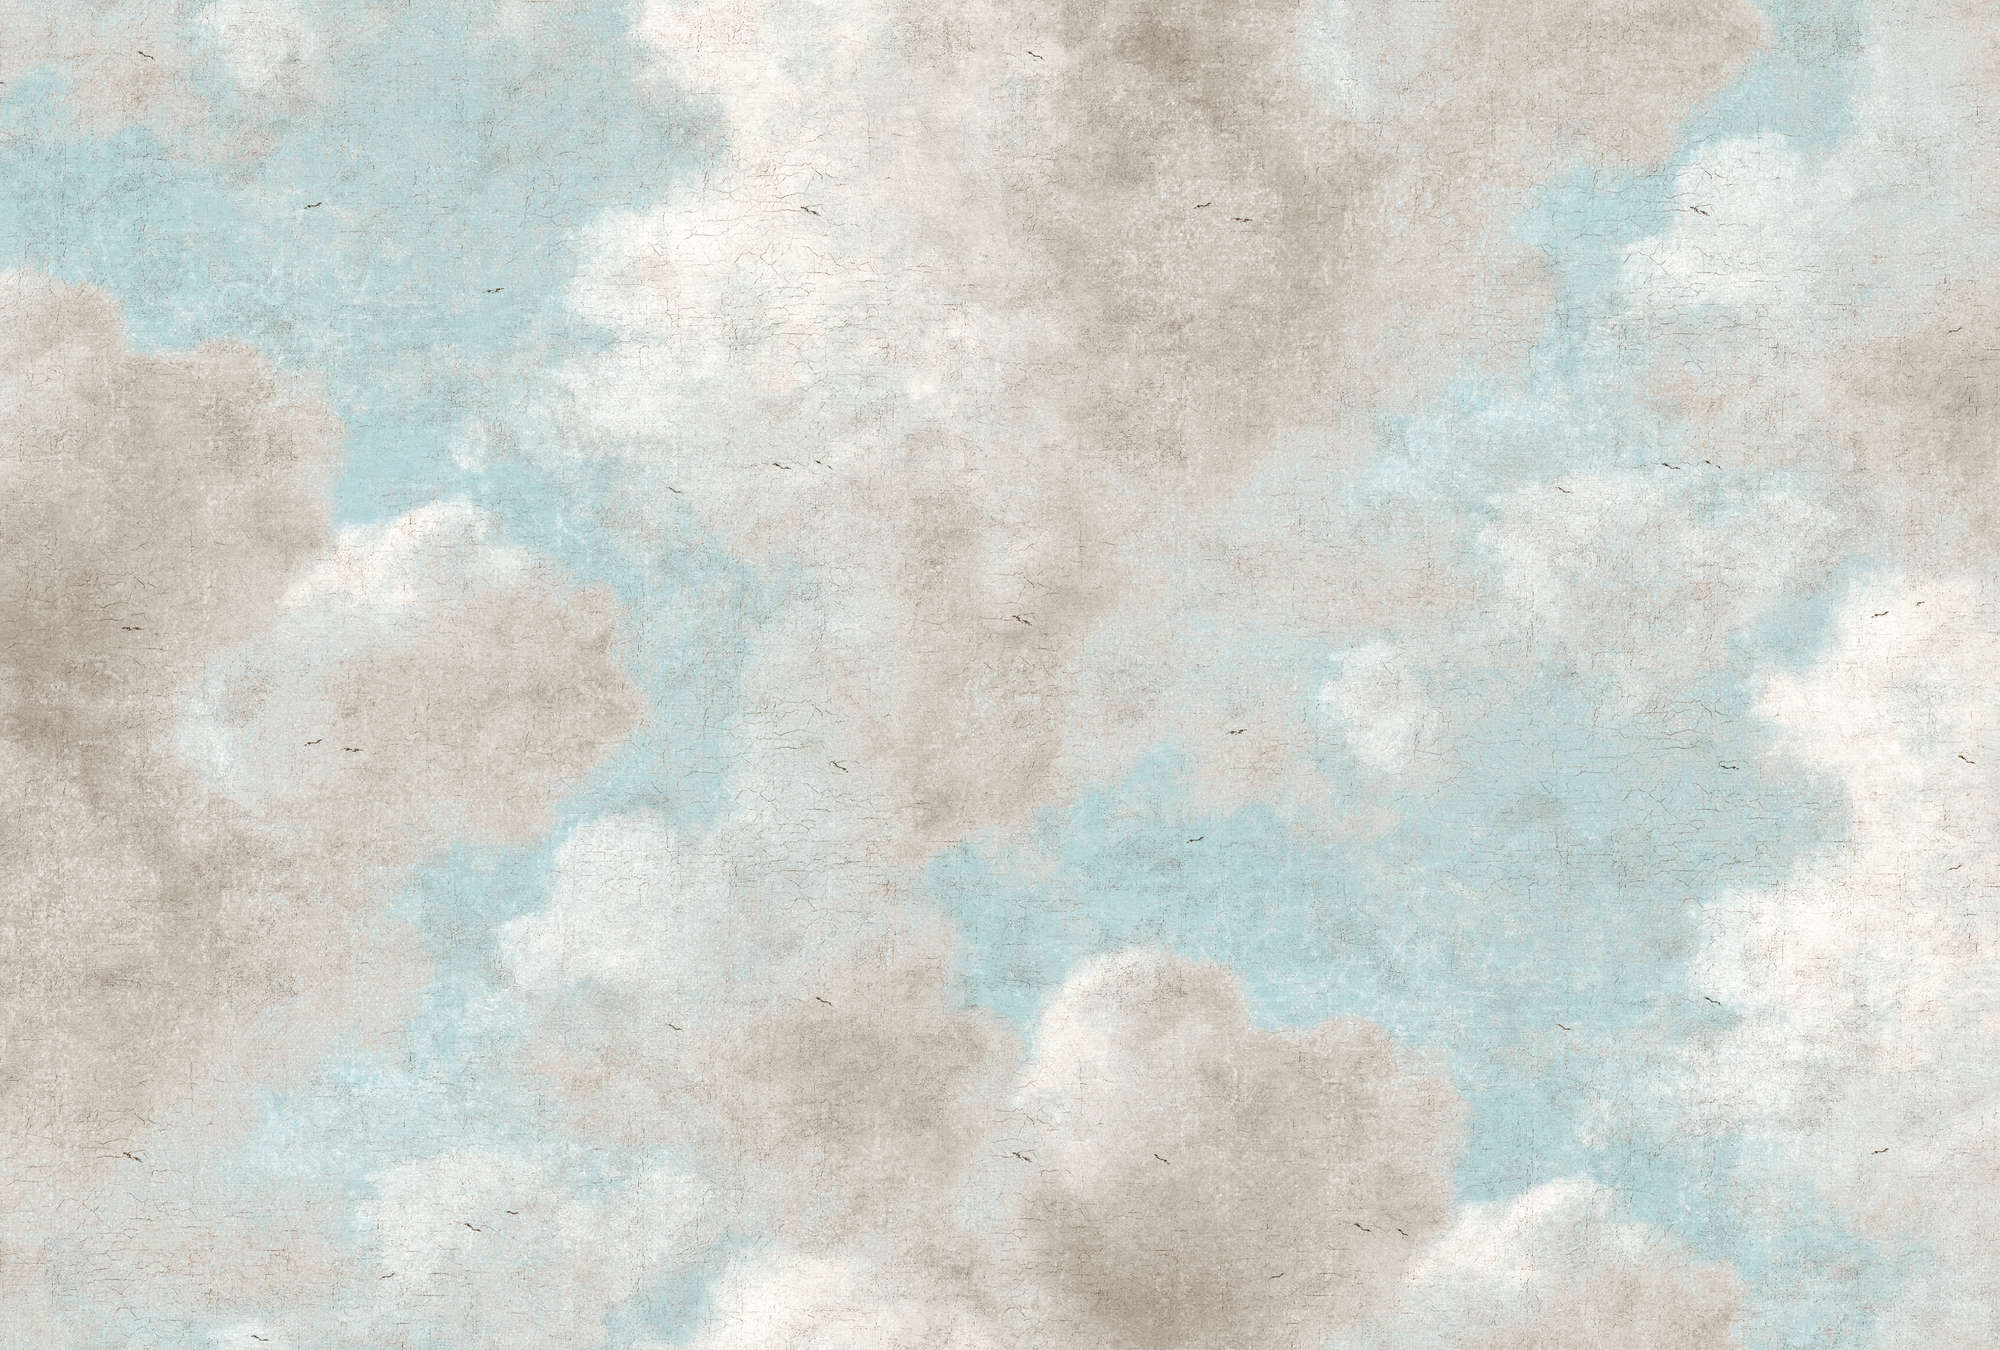             Papier peint panoramique nuages, ciel bleu style peinture à l'huile - gris, bleu
        